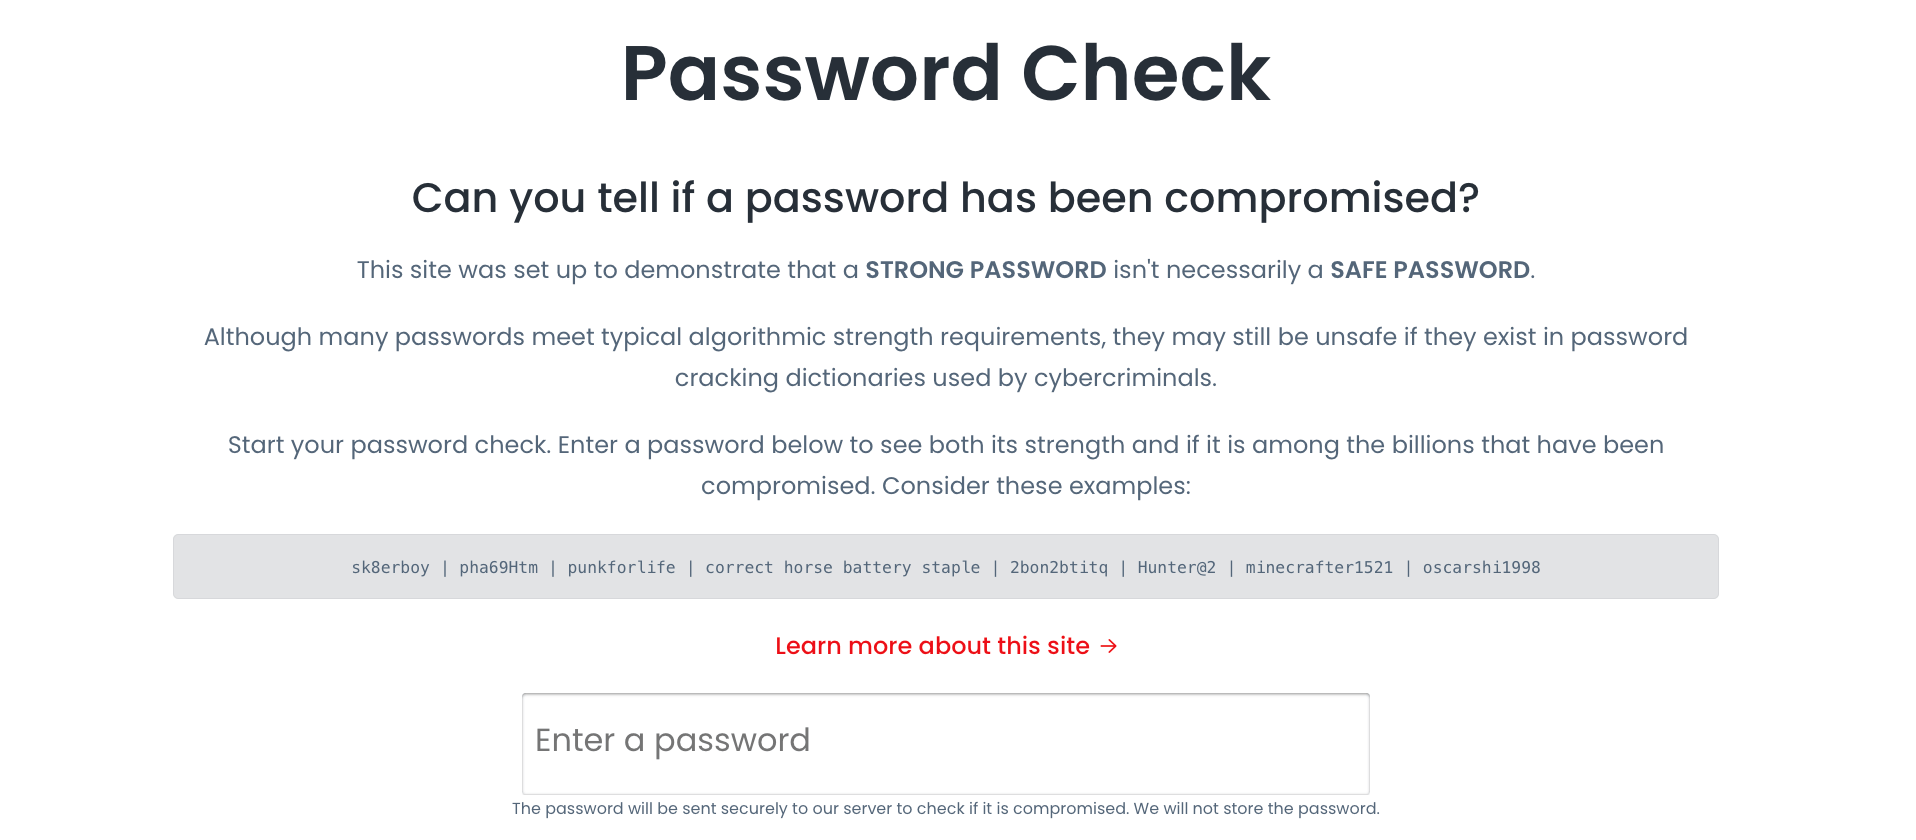 Password Check